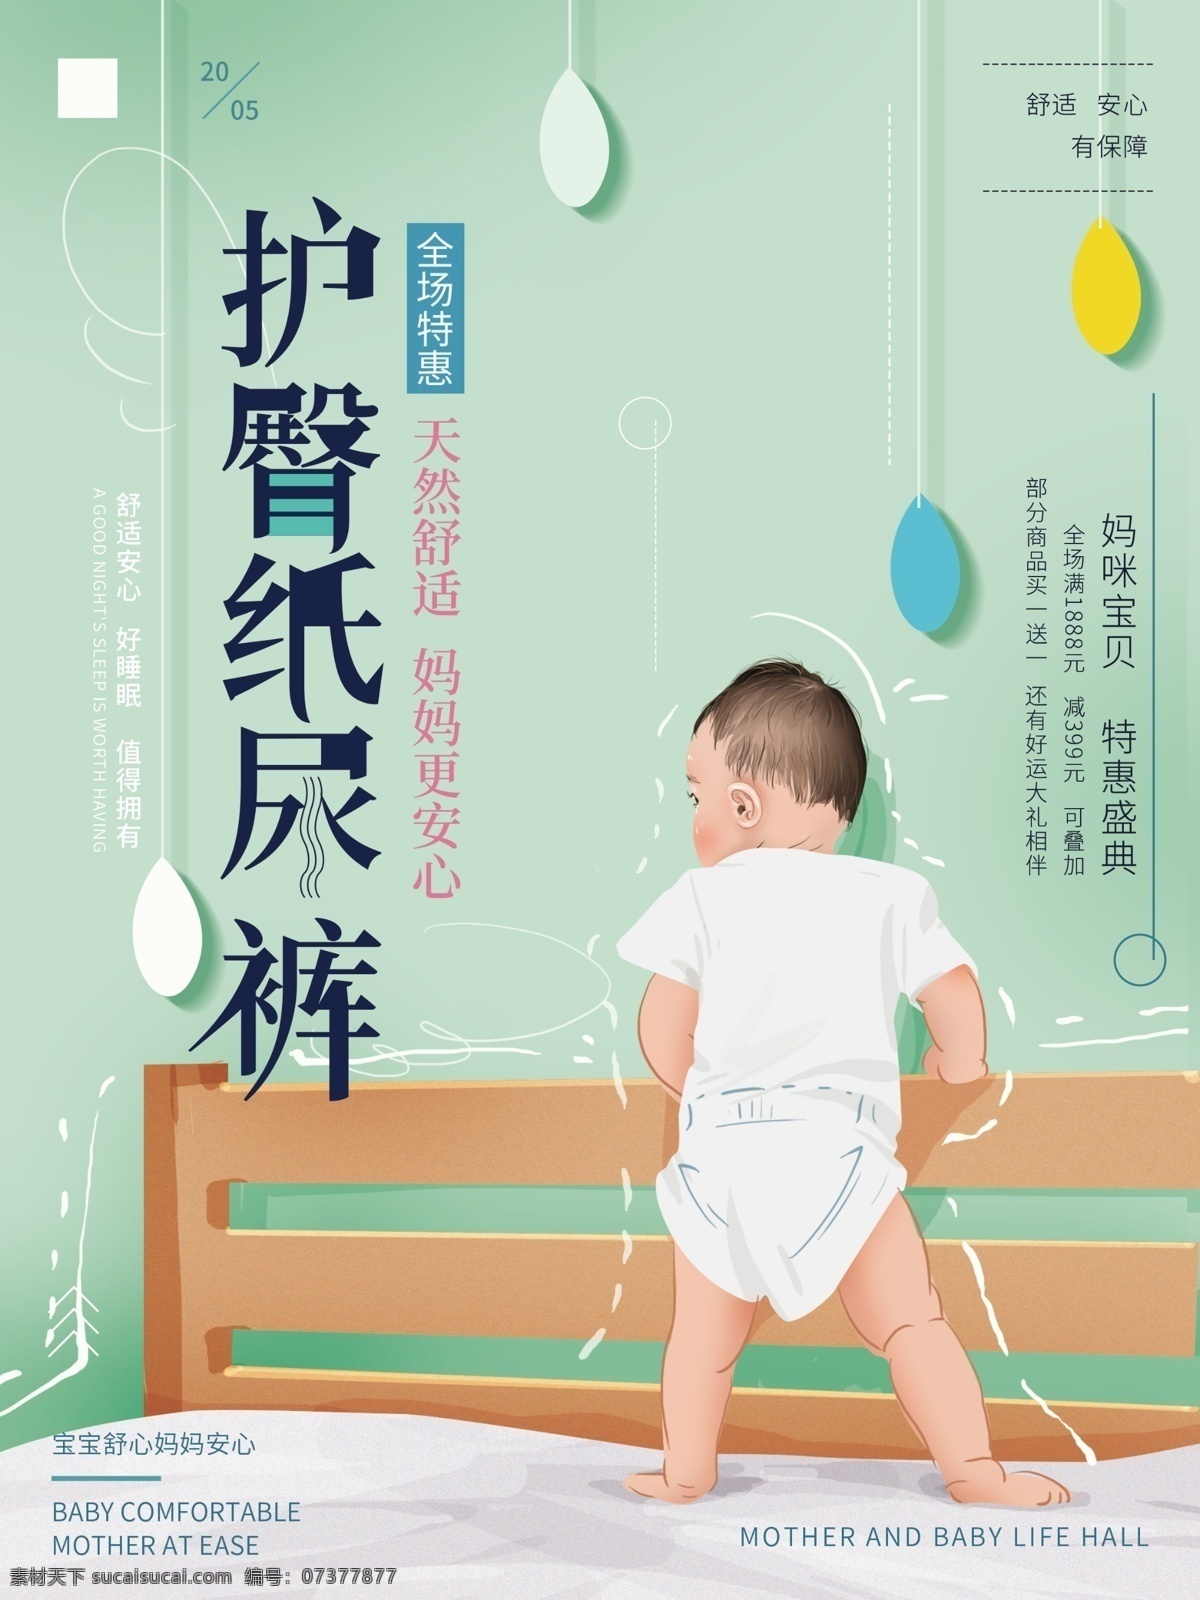 原创 手绘 清新 婴儿 纸尿裤 促销 海报 简约 绿色 舒适 婴儿用品